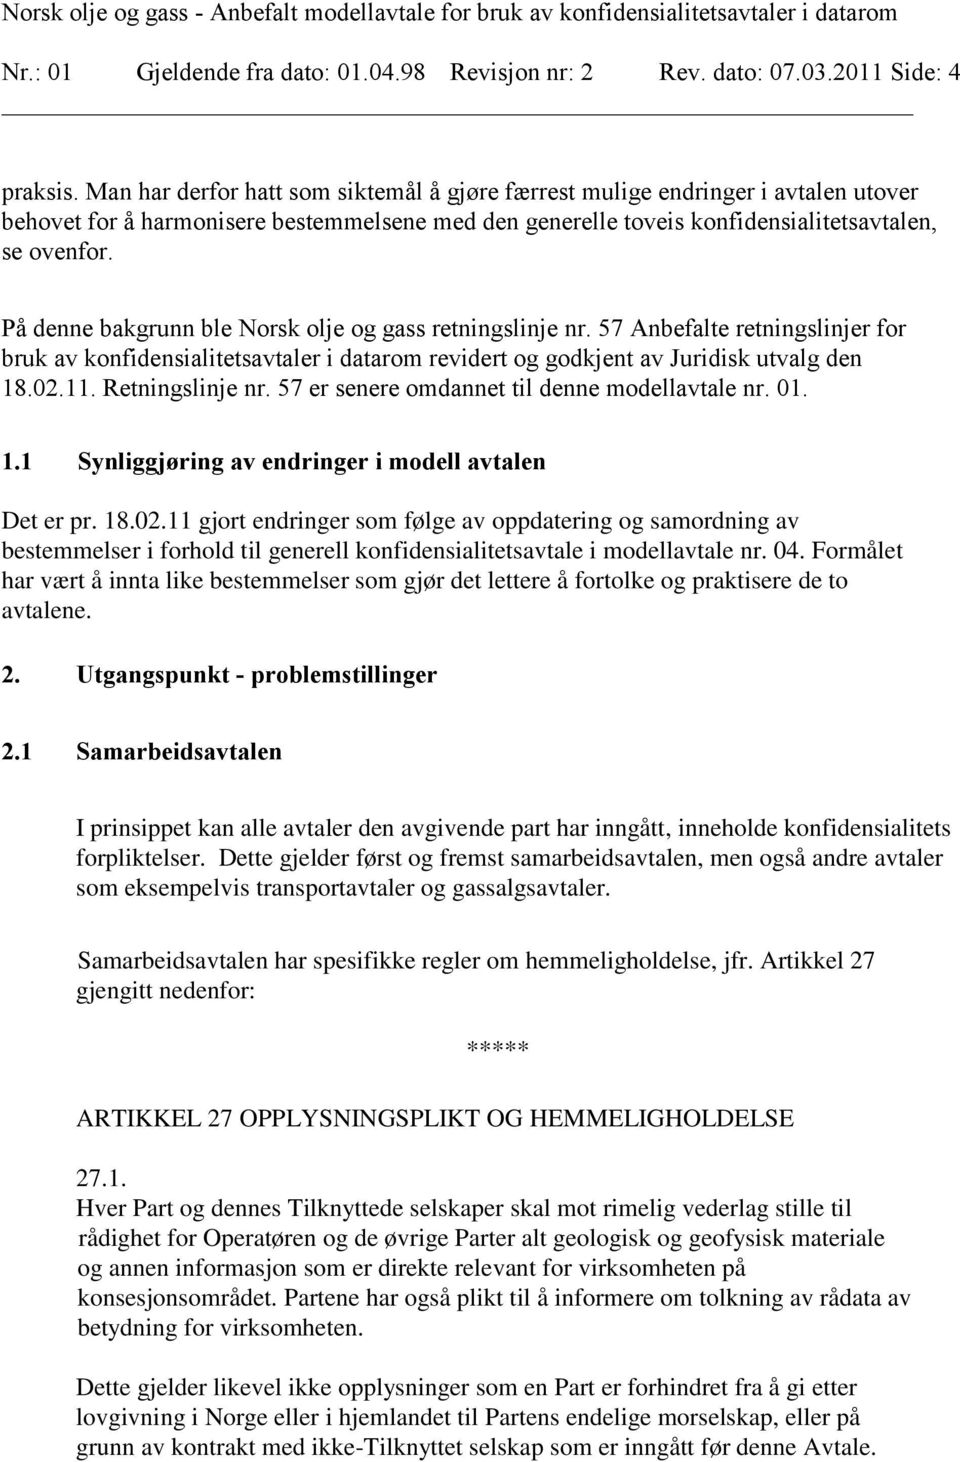 På denne bakgrunn ble Norsk olje og gass retningslinje nr. 57 Anbefalte retningslinjer for bruk av konfidensialitetsavtaler i datarom revidert og godkjent av Juridisk utvalg den 18.02.11.